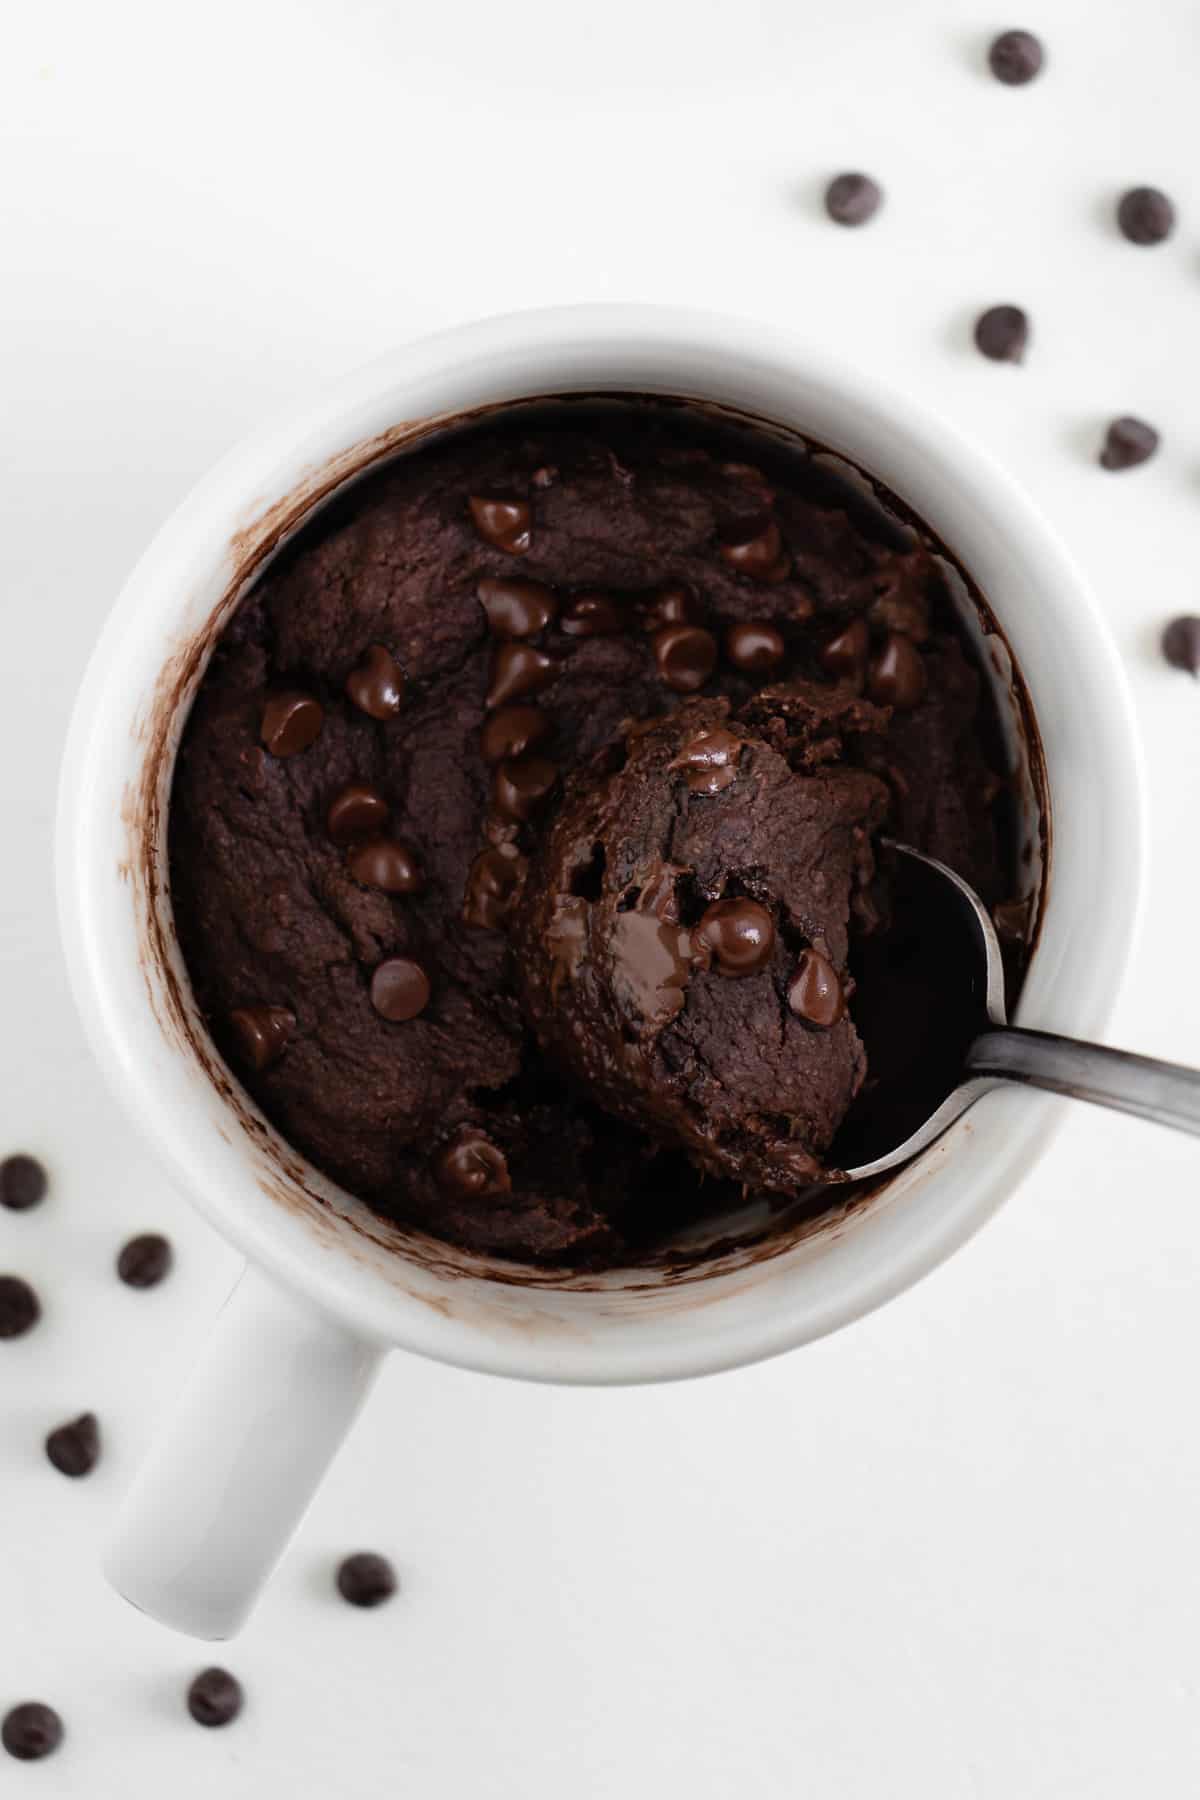 a spoon digging into a vegan chocolate mugcake inside a white mug